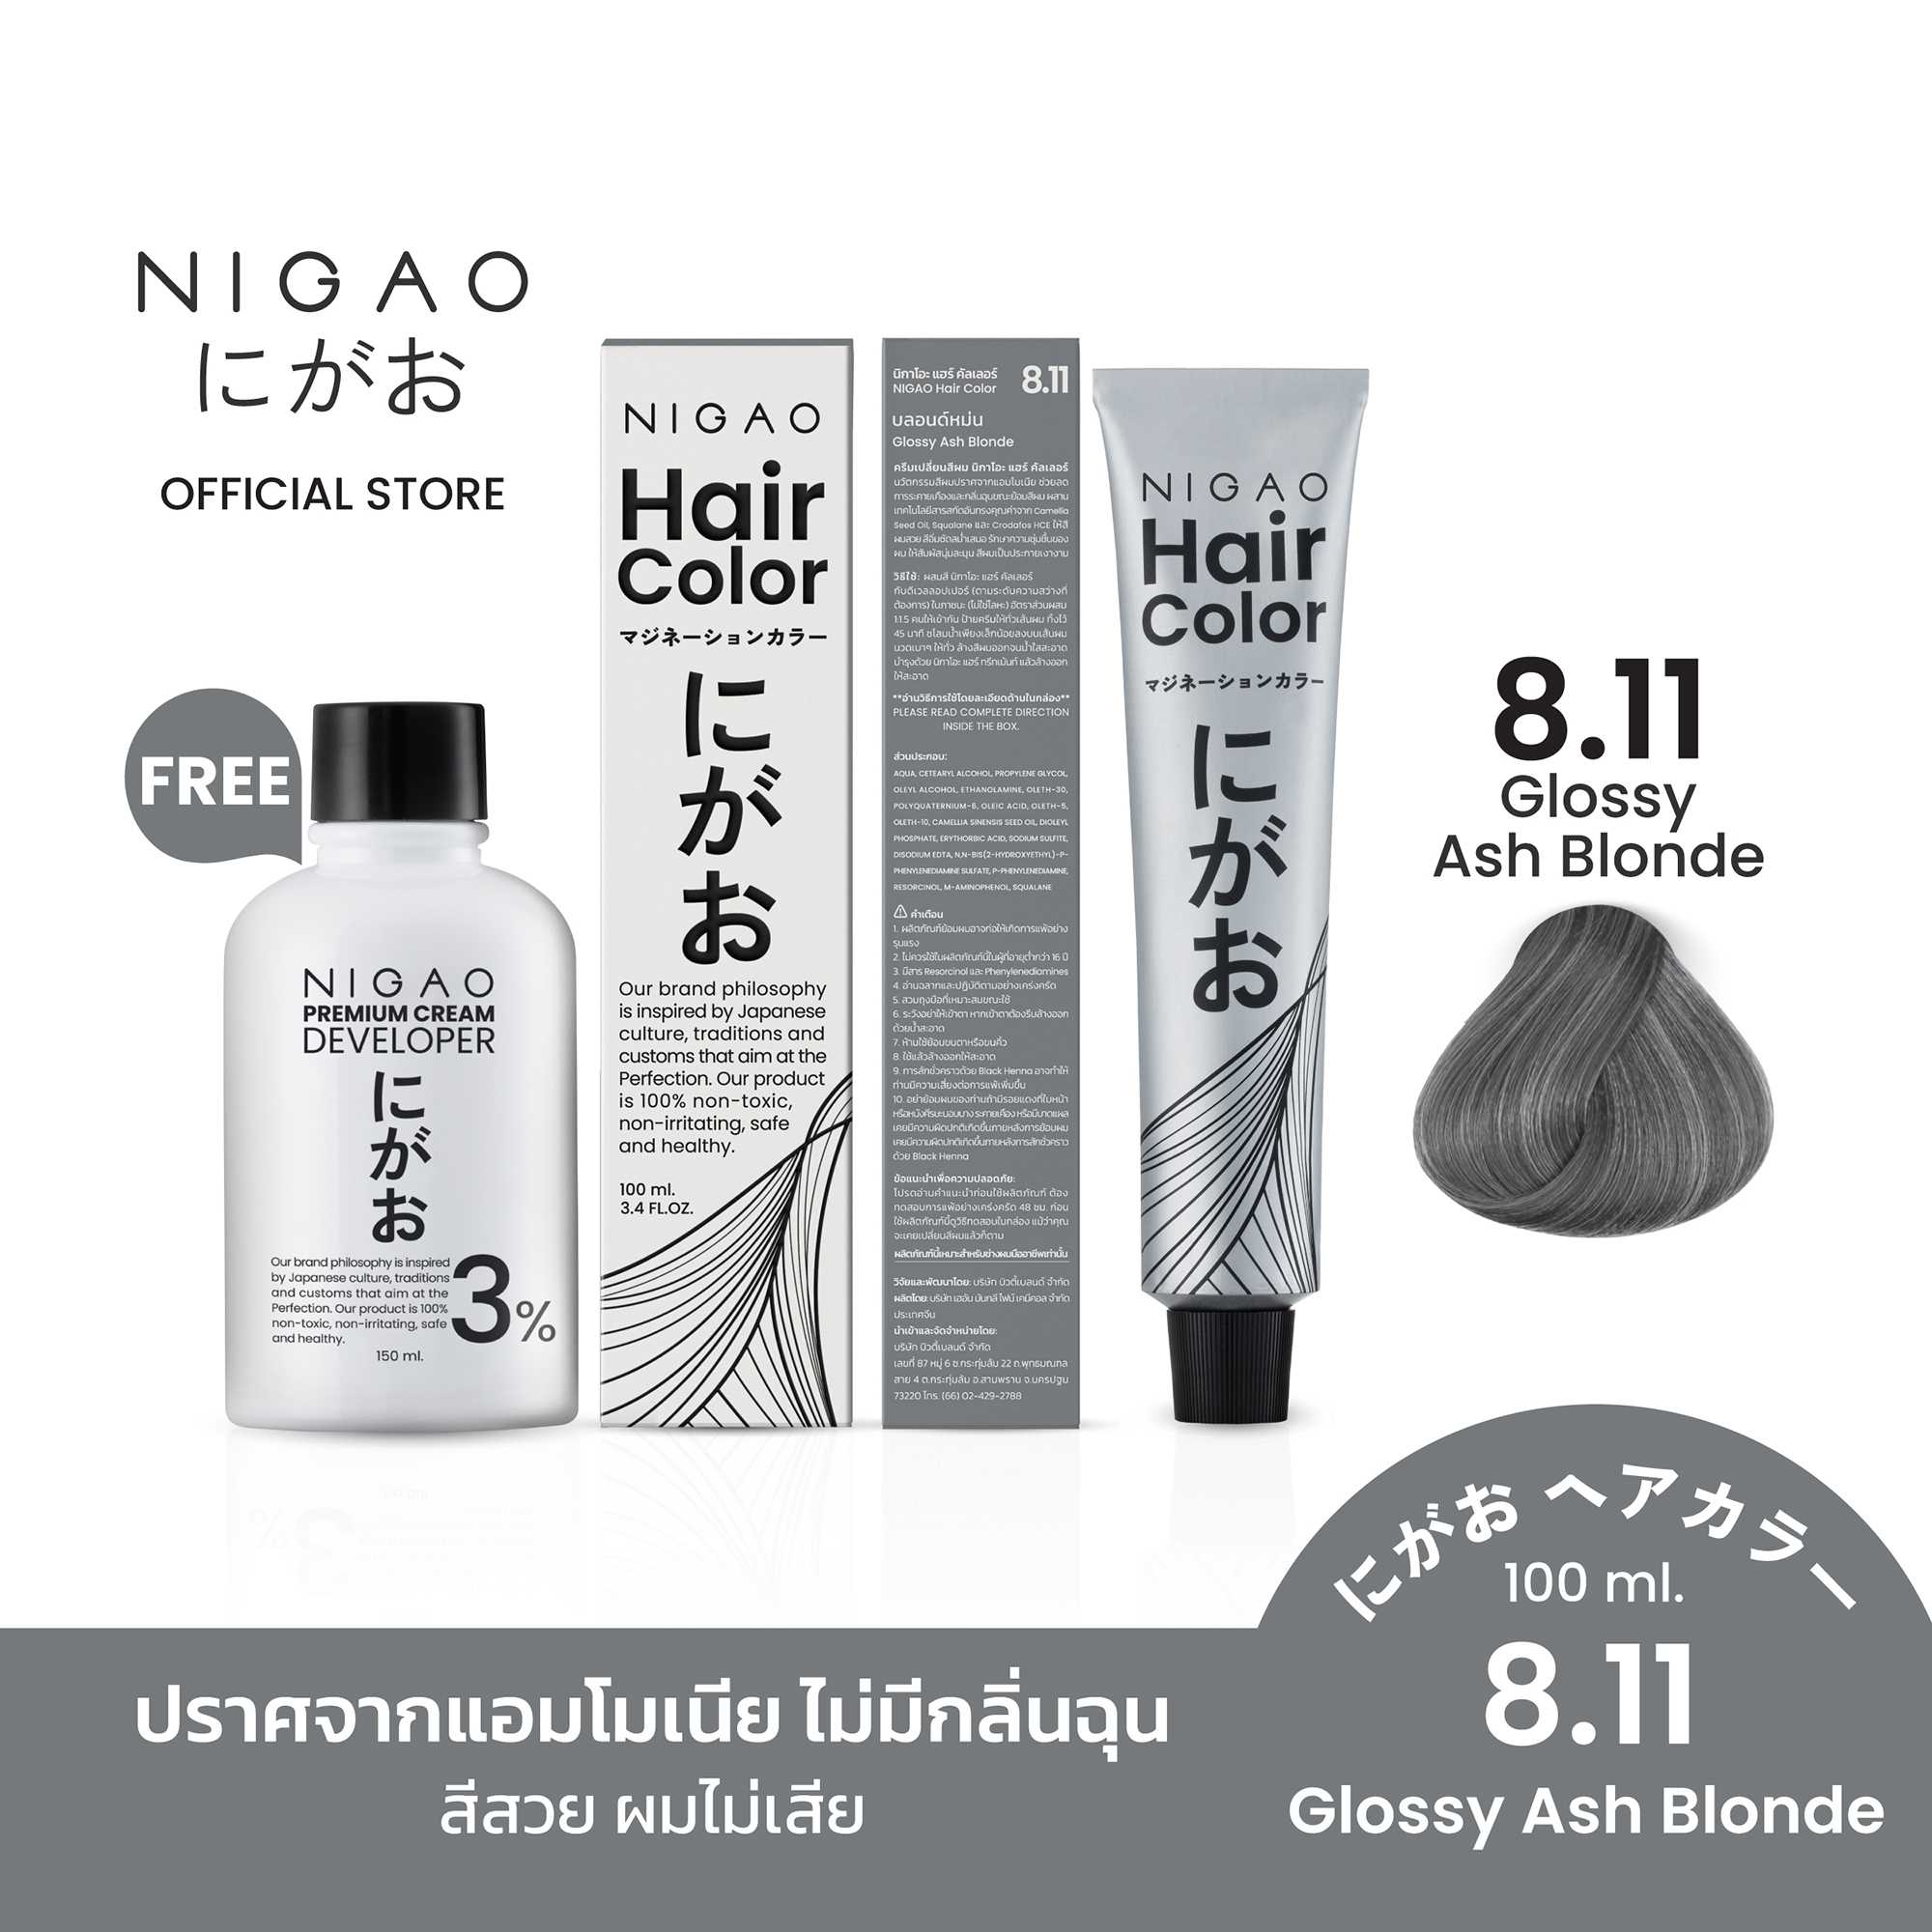 [ฟรี Developer] NIGAO Hair Color Silver Grey 8.11 |  สีเทา หม่น 100 ml.